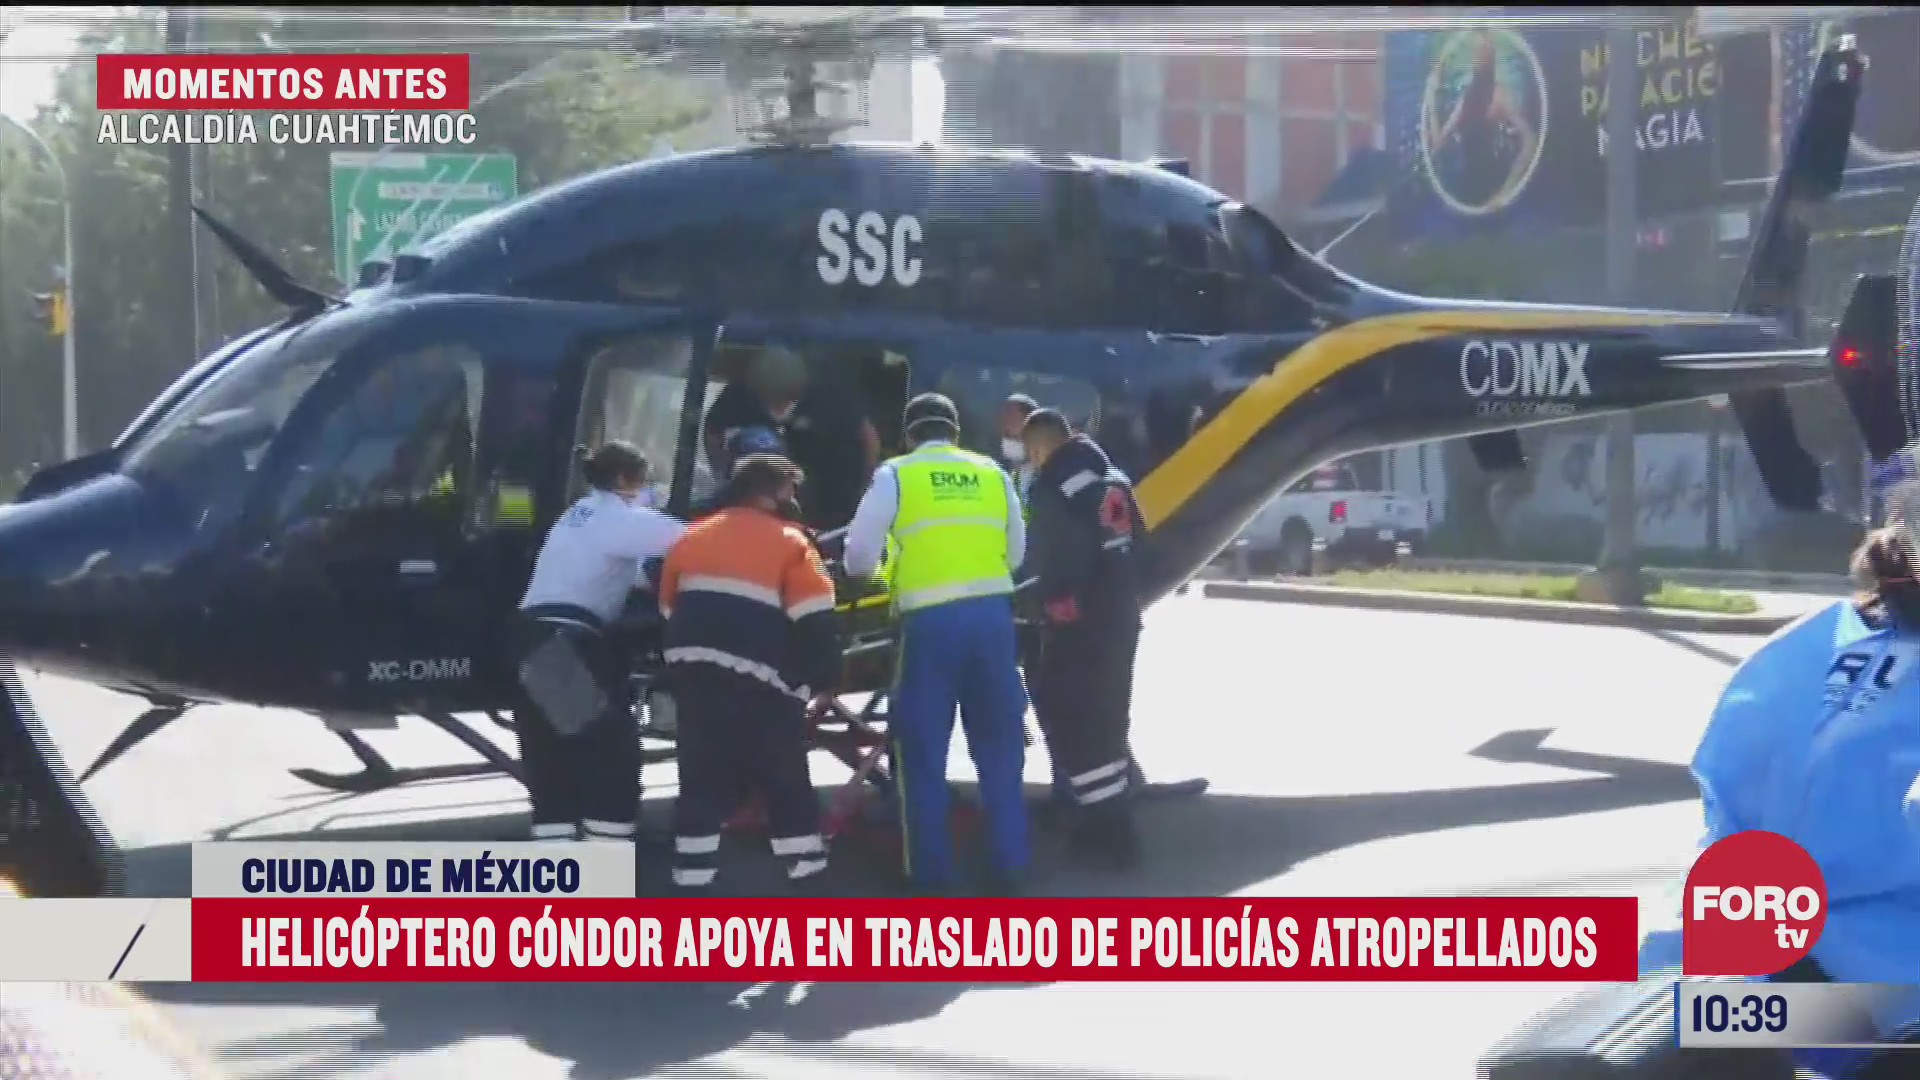 helicoptero condor apoya en traslado de policias atropellados en cdmx